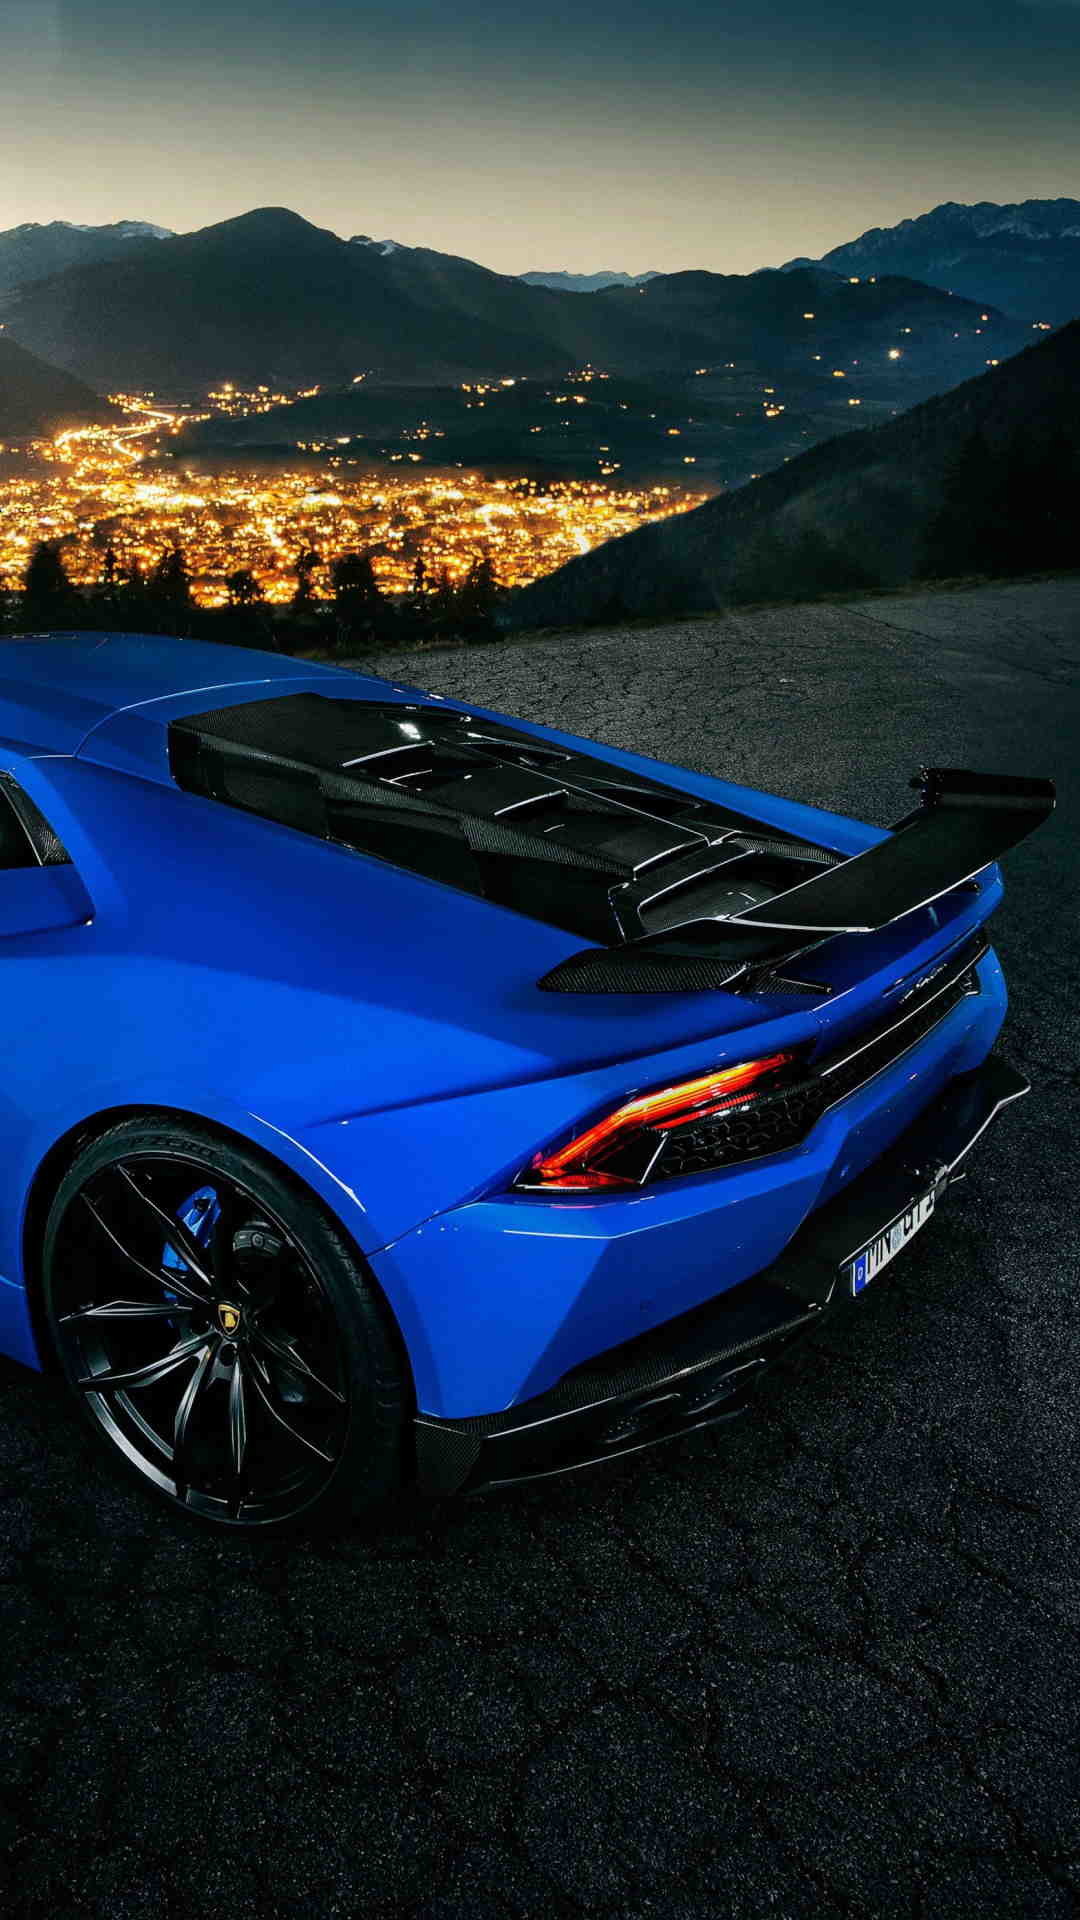 1080x1920 Image of Lamborghini-Huracan-Wallpaper-for-iPhone-6-Plus-